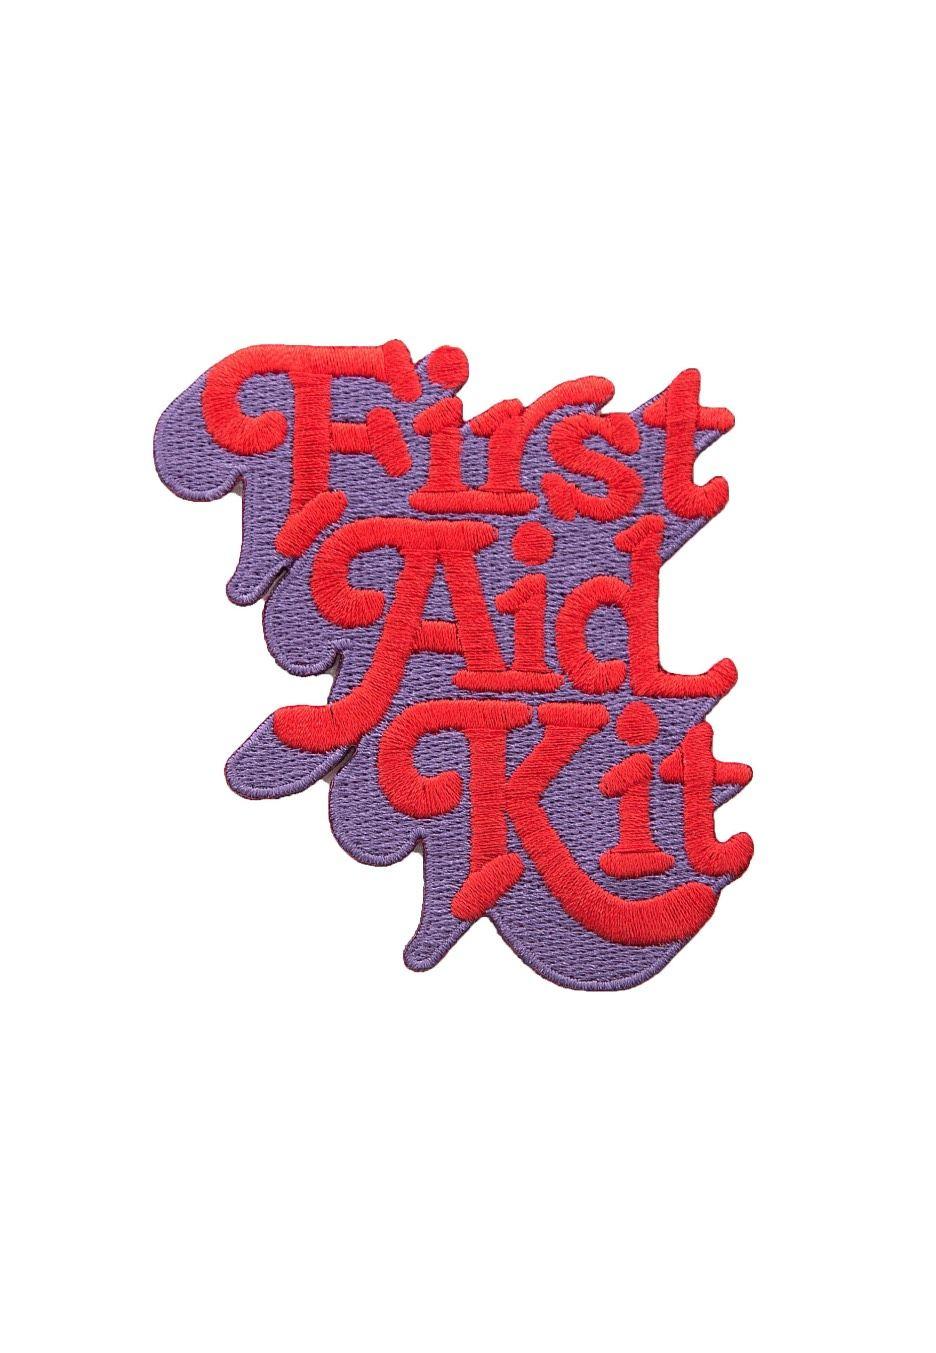 First Aid Box Logo - First Aid Kit Pop Merchandise Shop